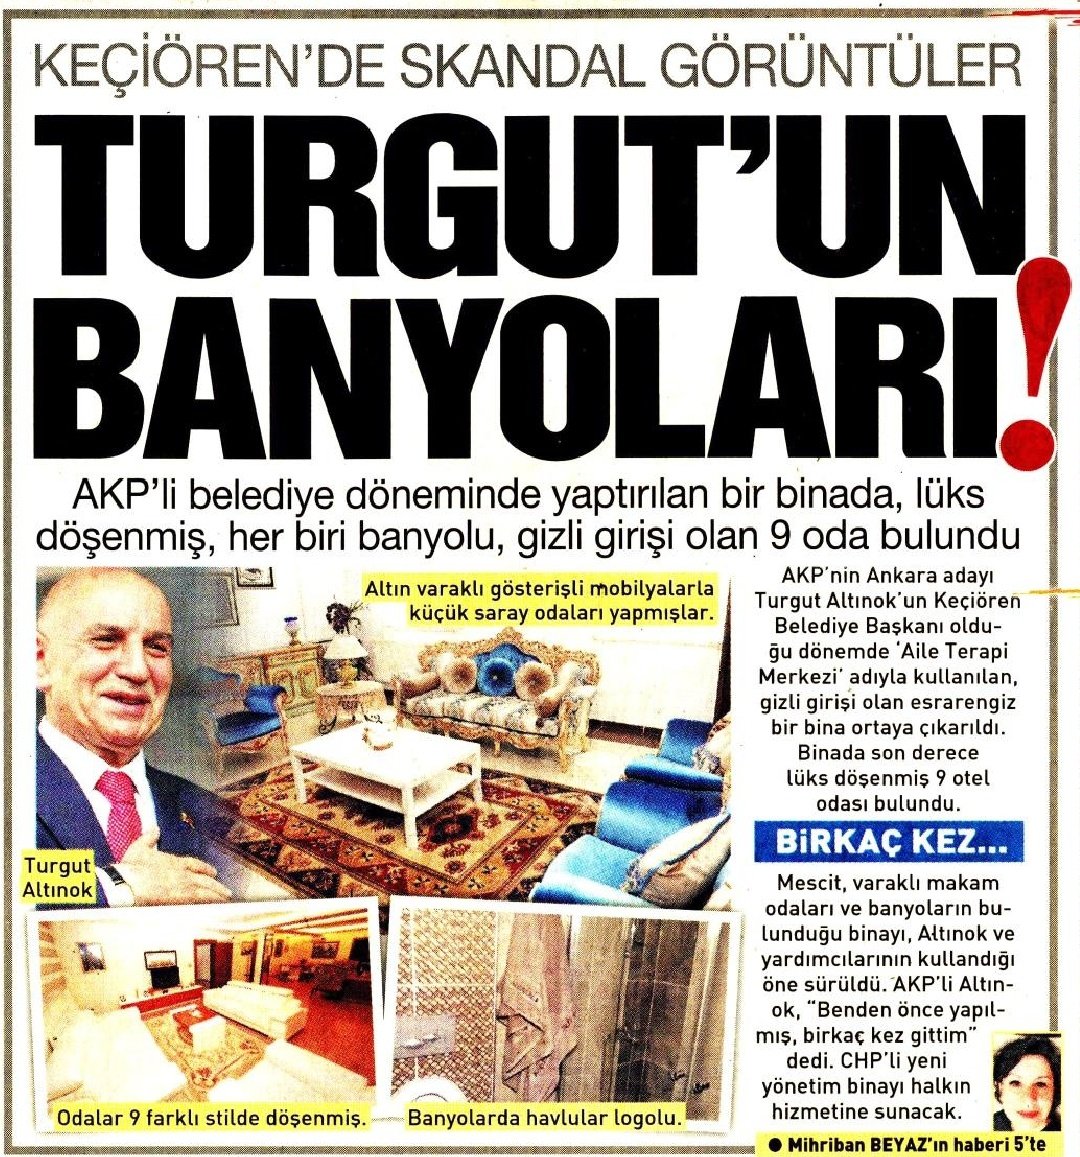 Turgut Altınok'un belediyesinde gizli geçitli 9 odalı yer ortaya çıktı. Her odada banyo var.
Peki banyolar ne için kullanılıyordu?